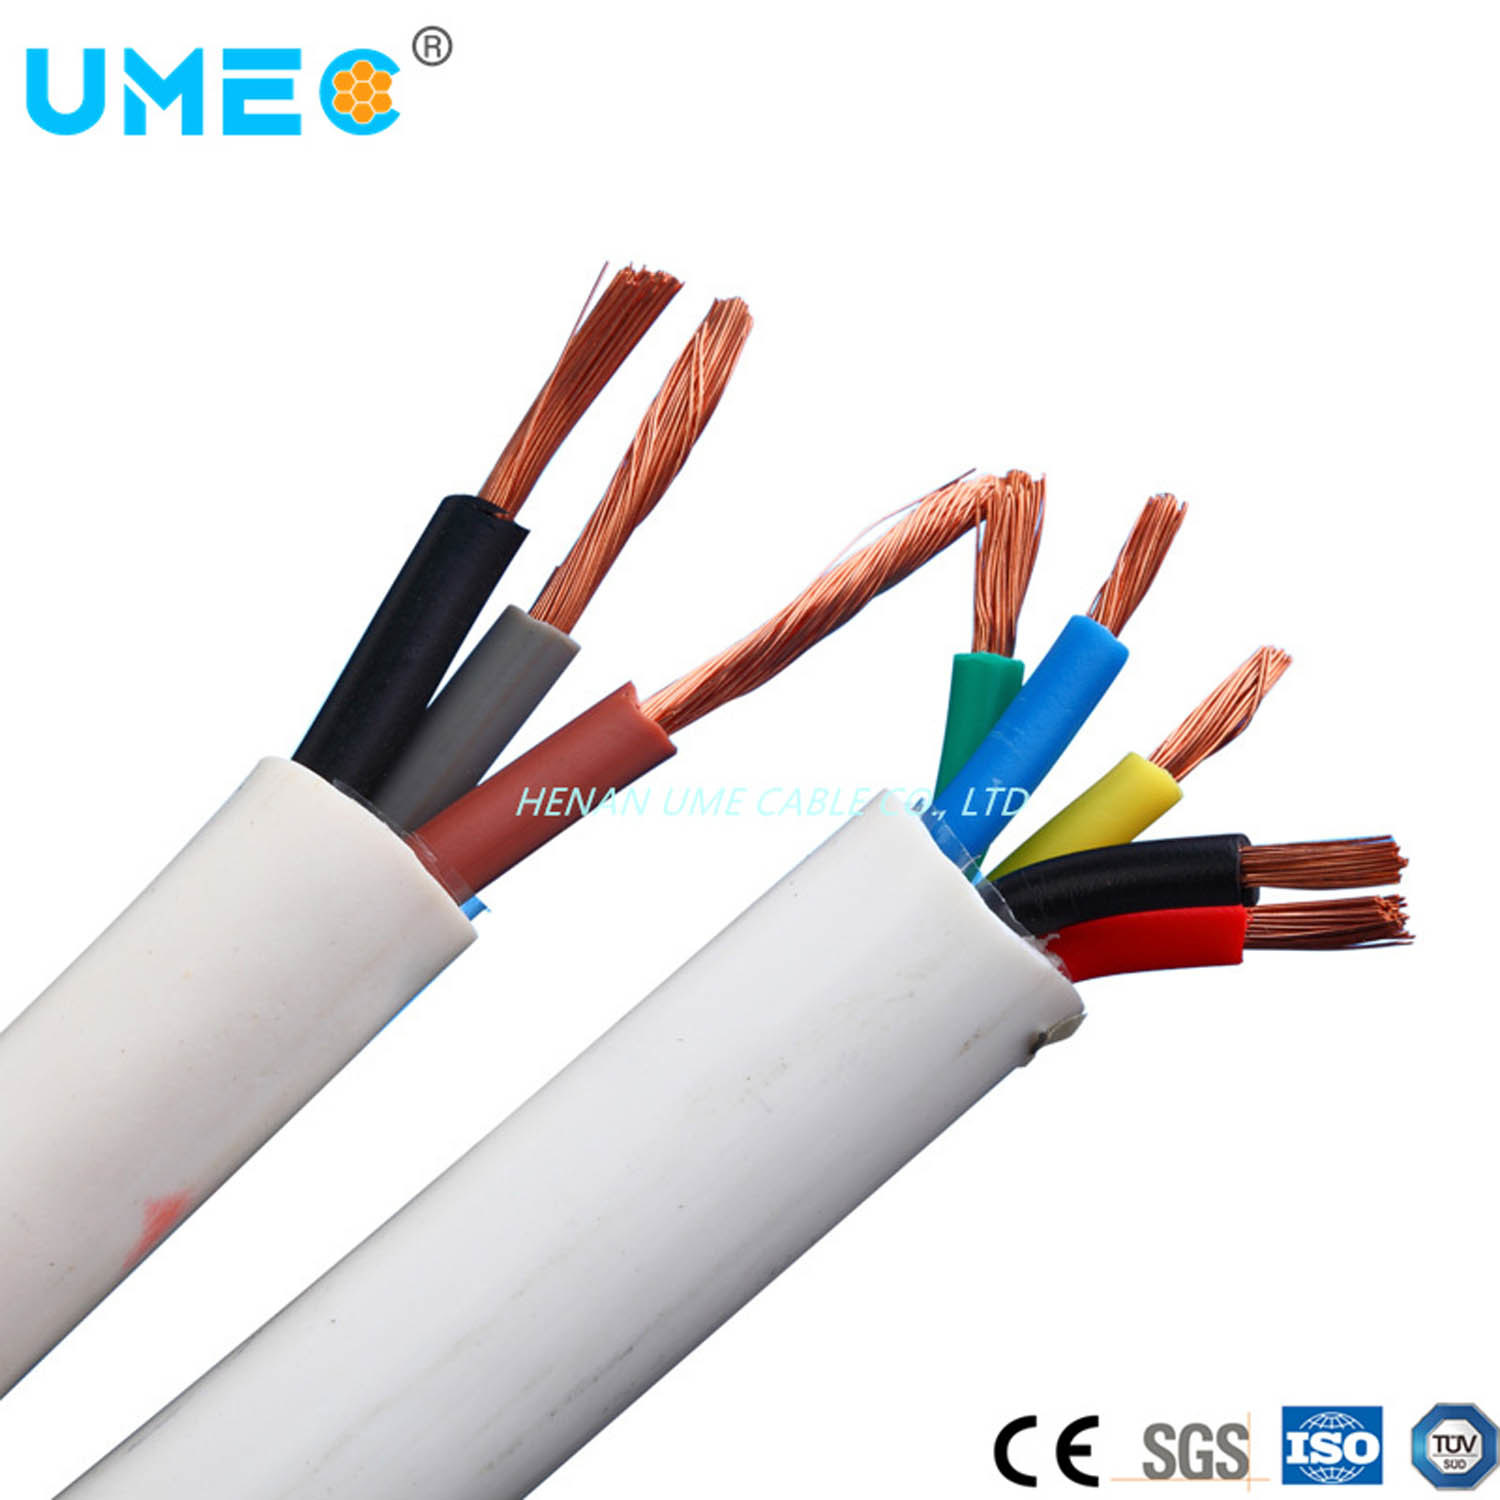 
                0,5Mm2 0,75mm2 cabos multiaxiais com isolamento de PVC flexível com bainha de PVC CABO H03Fio vvf
            